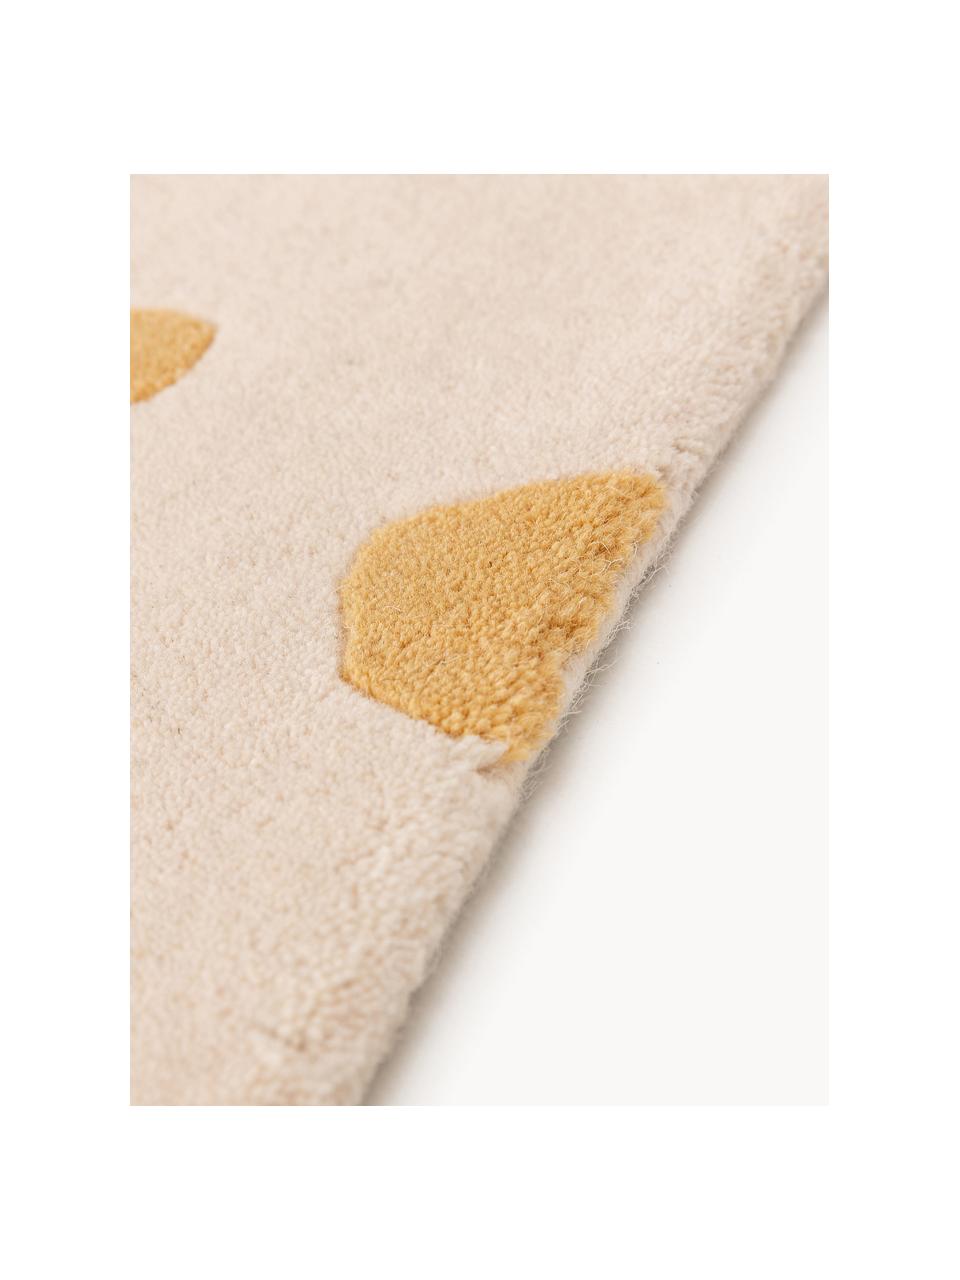 Ručne tuftovaný detský vlnený koberec Savannah, 100 % vlna

V prvých týždňoch používania môžu vlnené koberce uvoľňovať vlákna, tento jav zmizne po niekoľkých týždňoch používania, Svetlobéžová, oranžová, Ø 120 x V 170 cm (veľkosť XL)